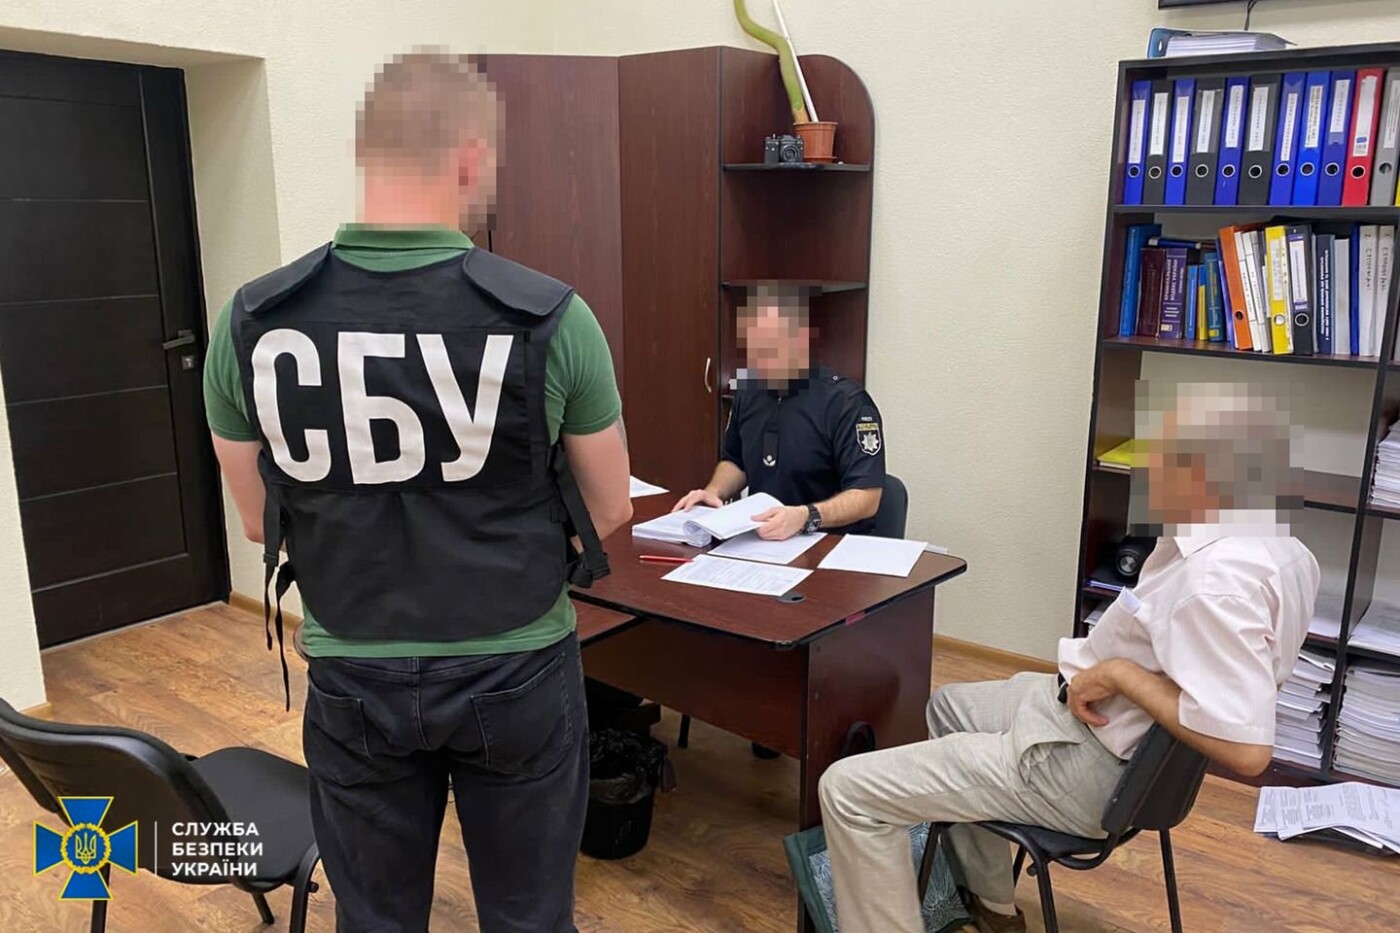 Ужгородський пропагандист росії та відновлення срср постане перед судом